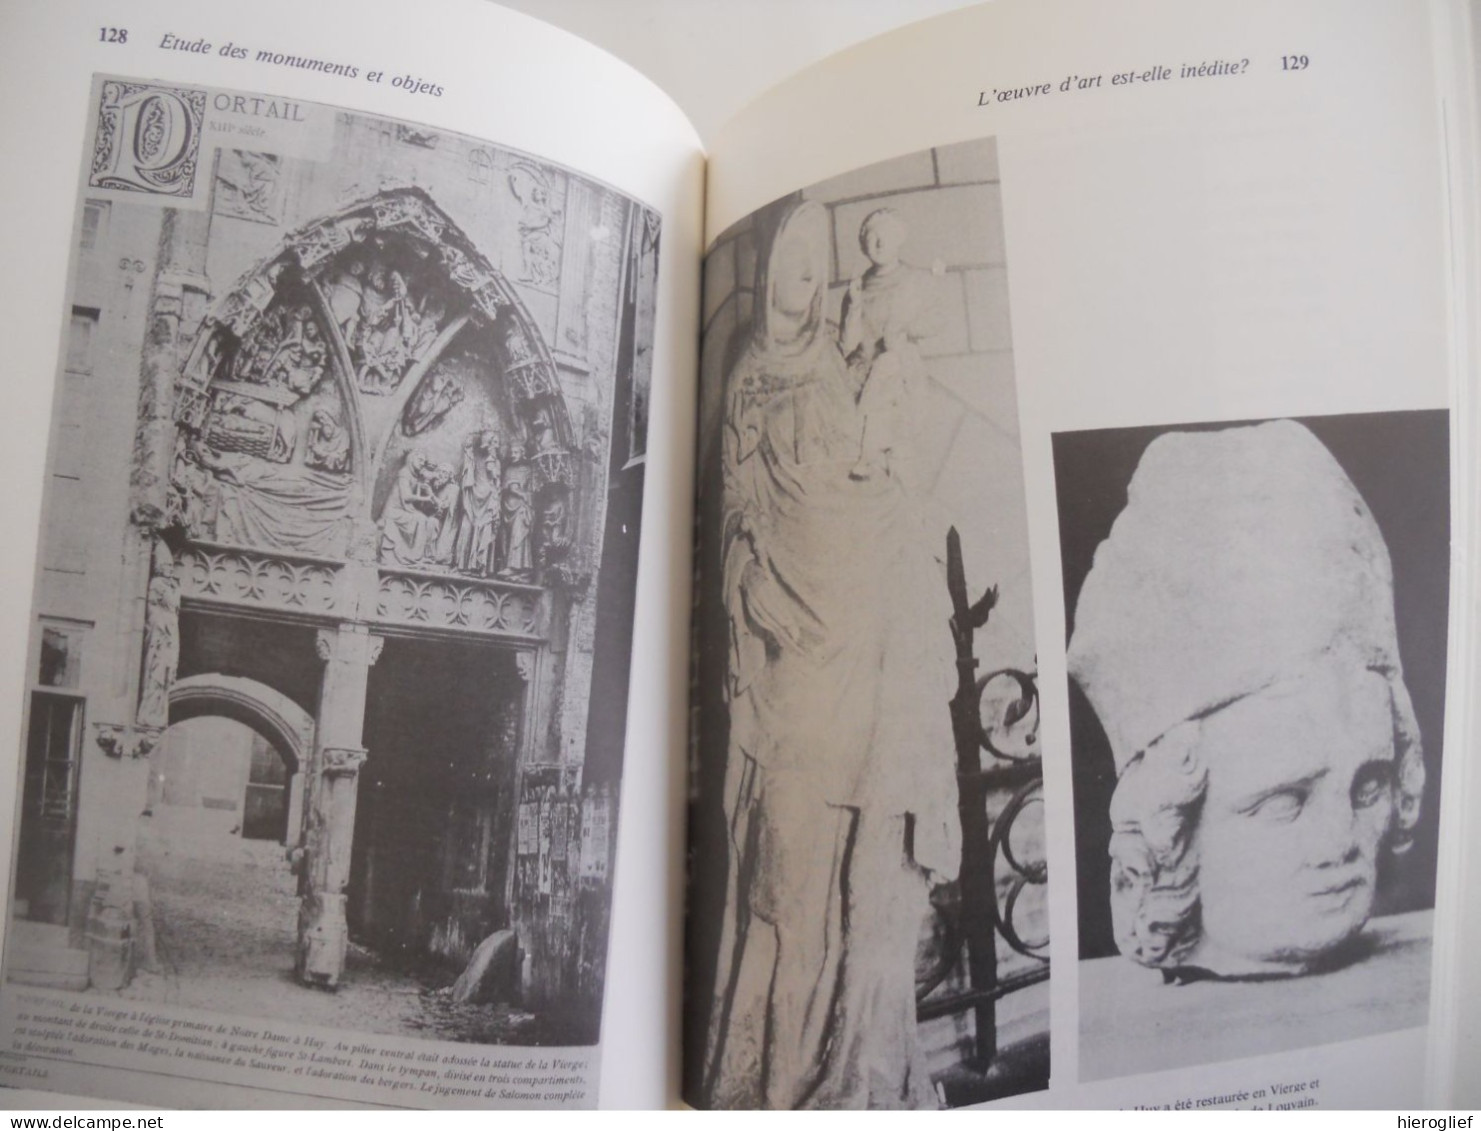 Introduction à l'archéologie et à l'histoire de l'art par Jacques Lavalleye 1979 Louvain-la-Neuve monumen ts objets